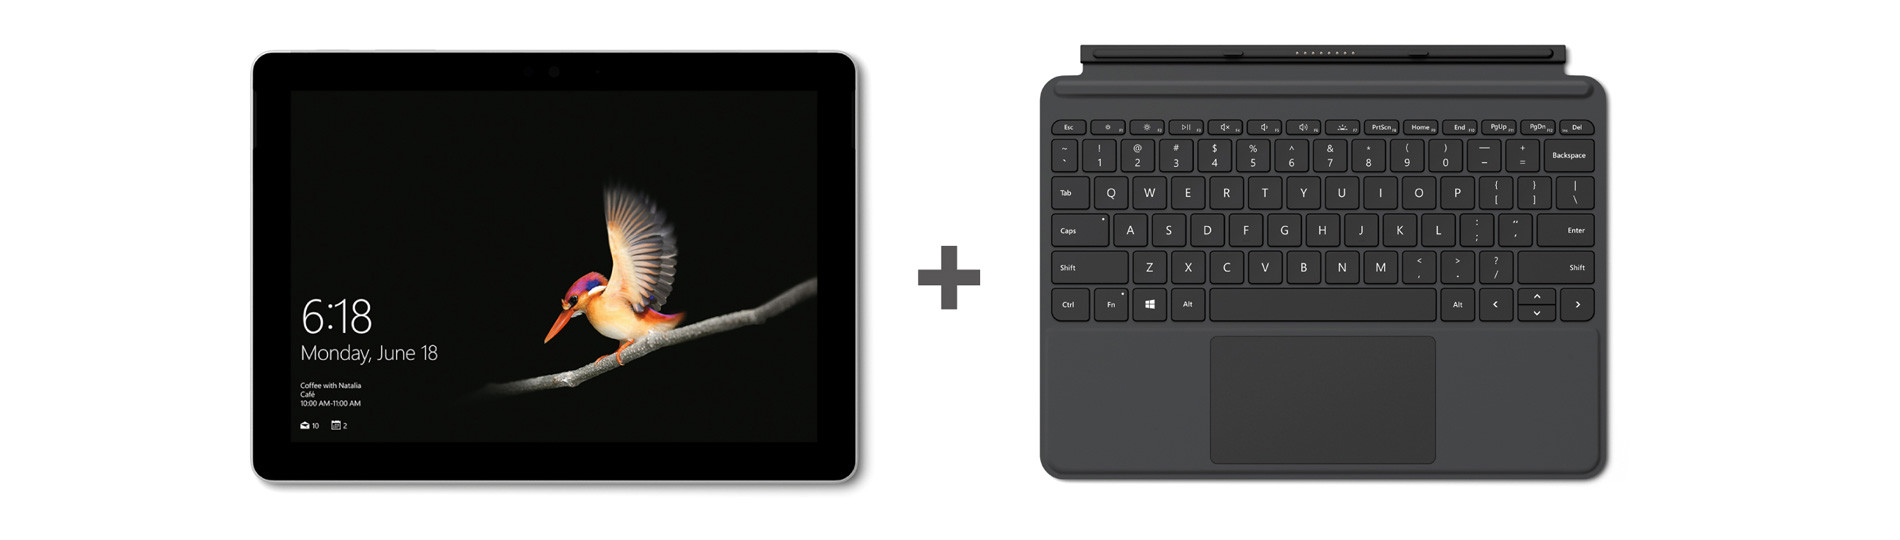 法人向け] Surface Go LTE Advanced と専用タイプ カバー同時購入で ...